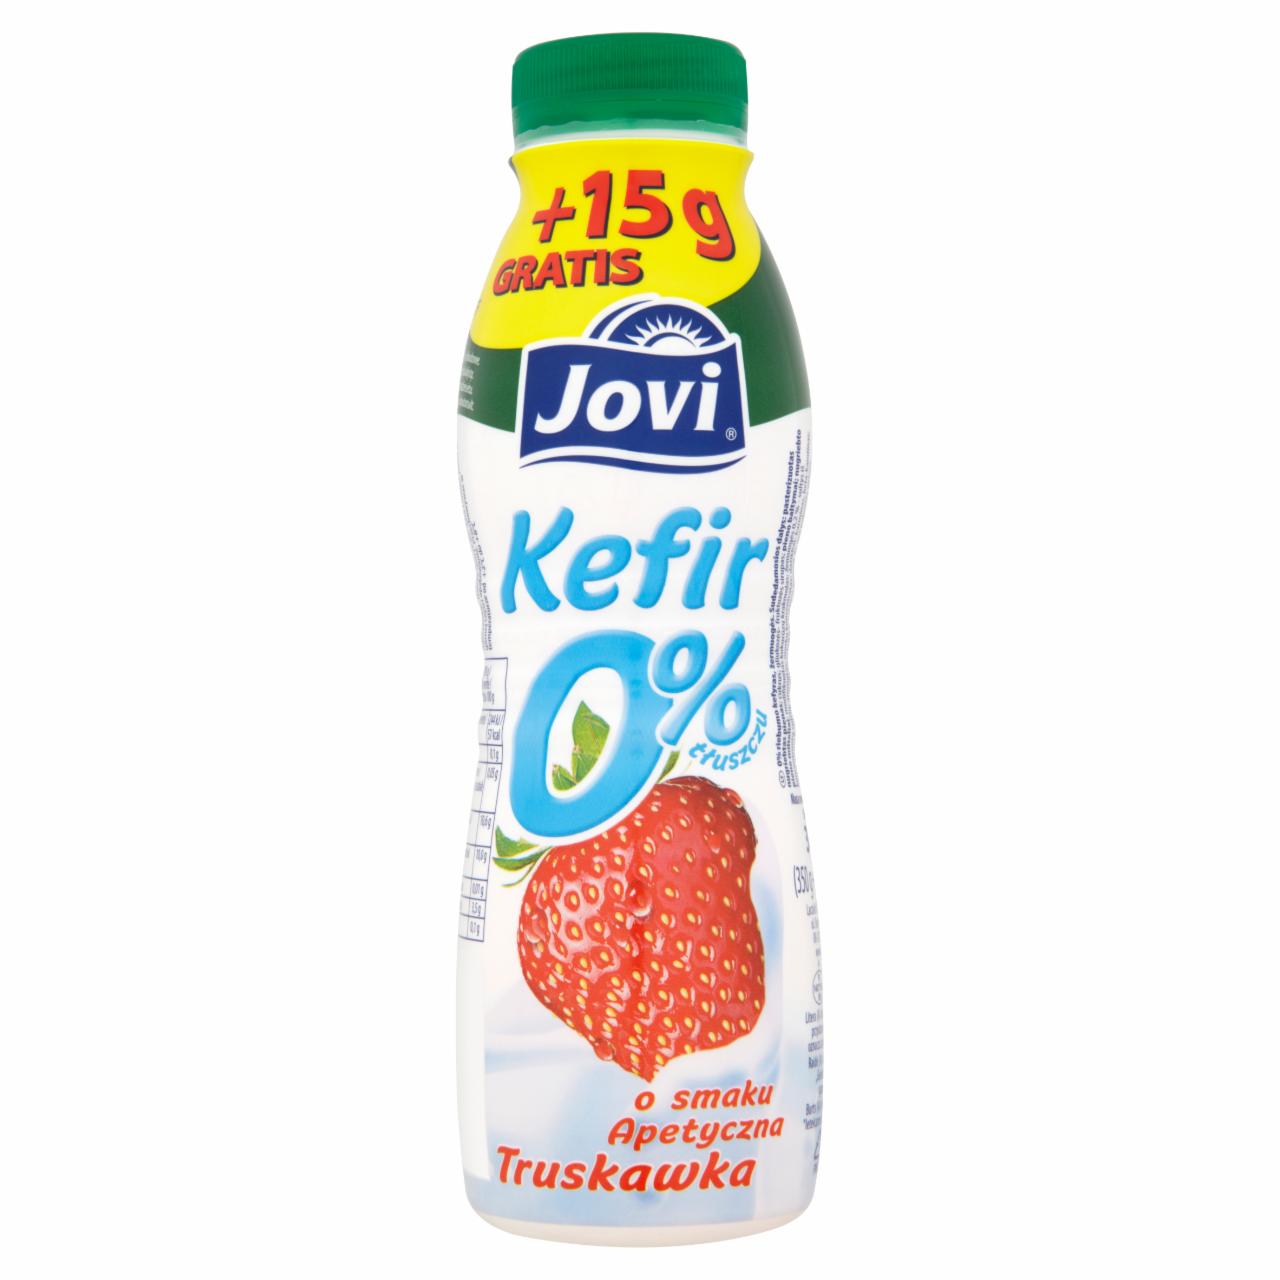 Zdjęcia - Jovi Kefir 0% o smaku apetyczna truskawka 365 g